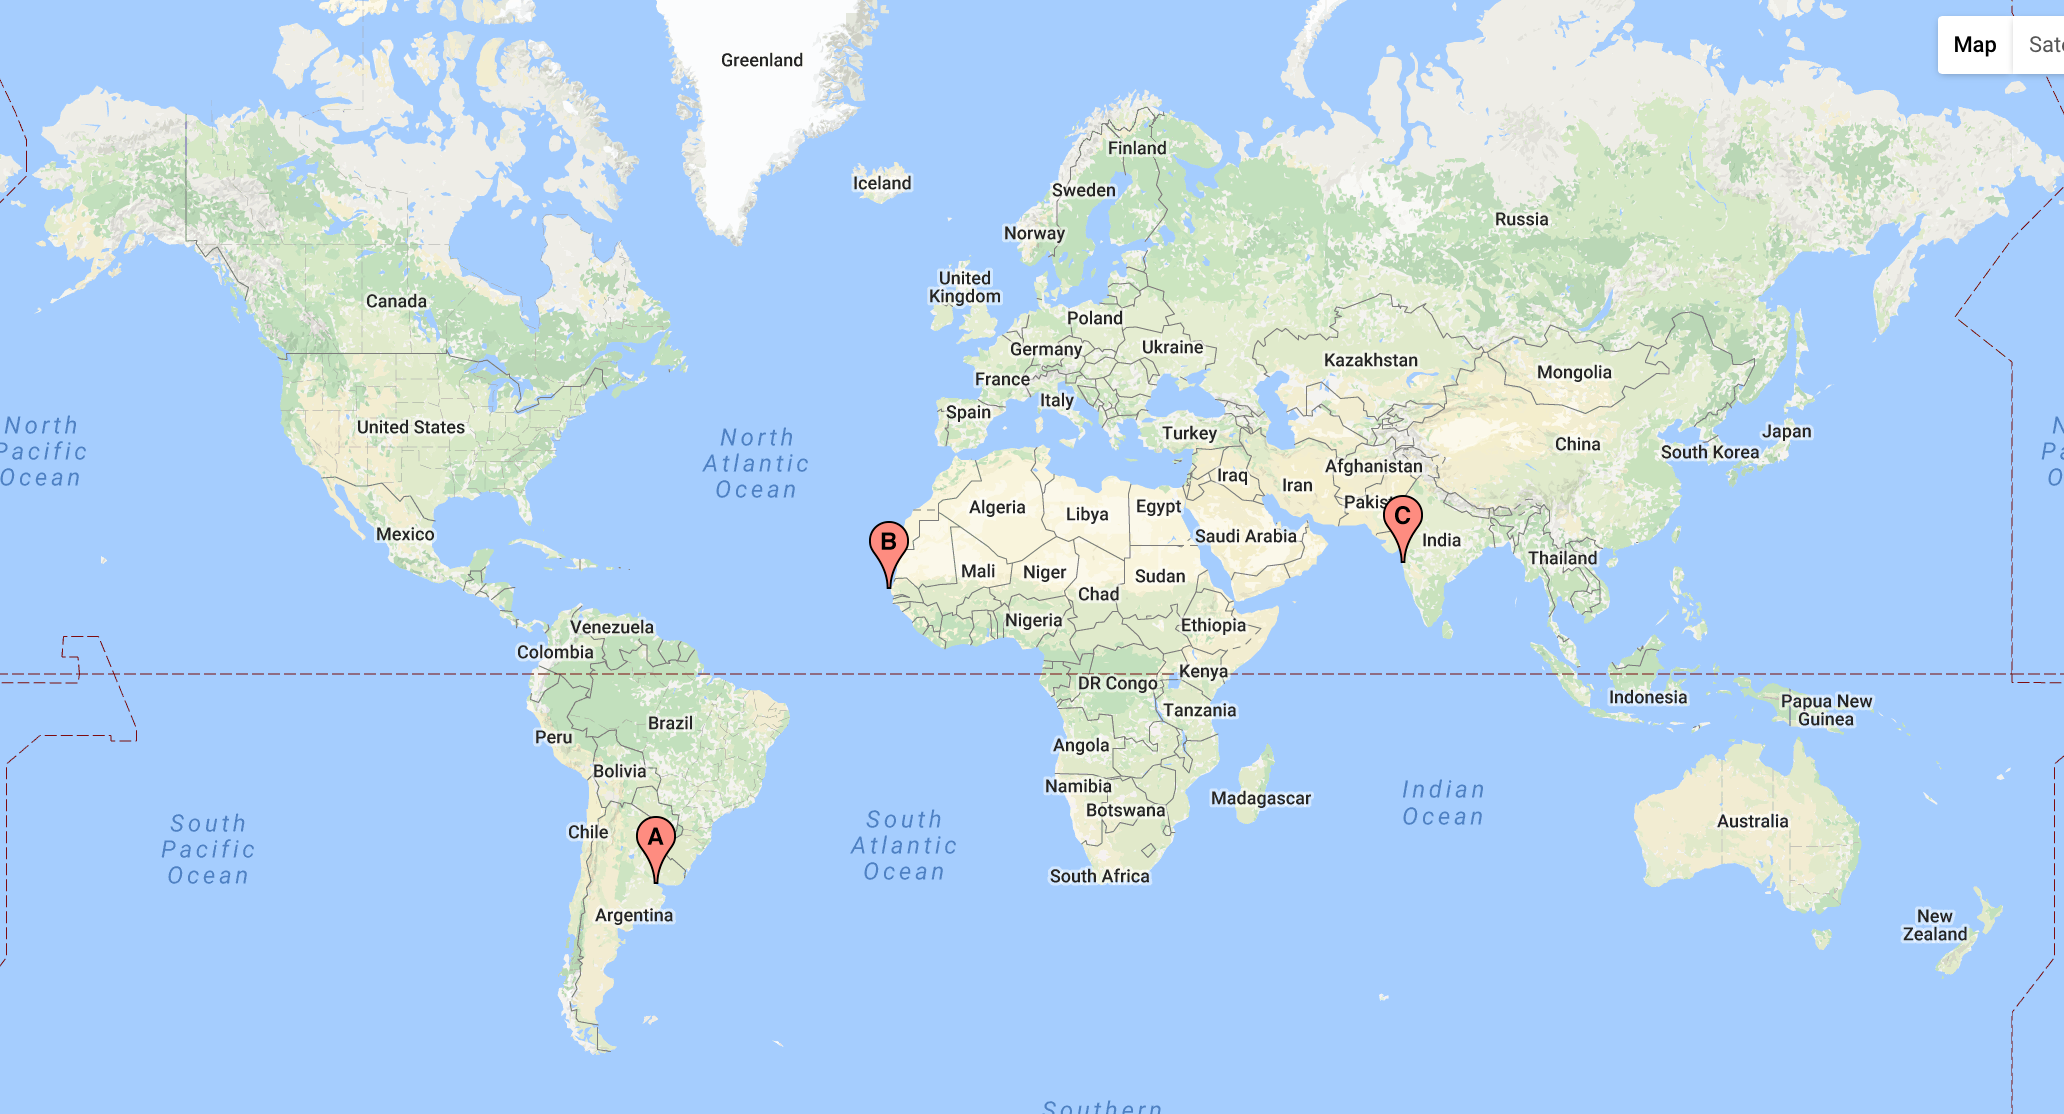 HUGS International Fellows map